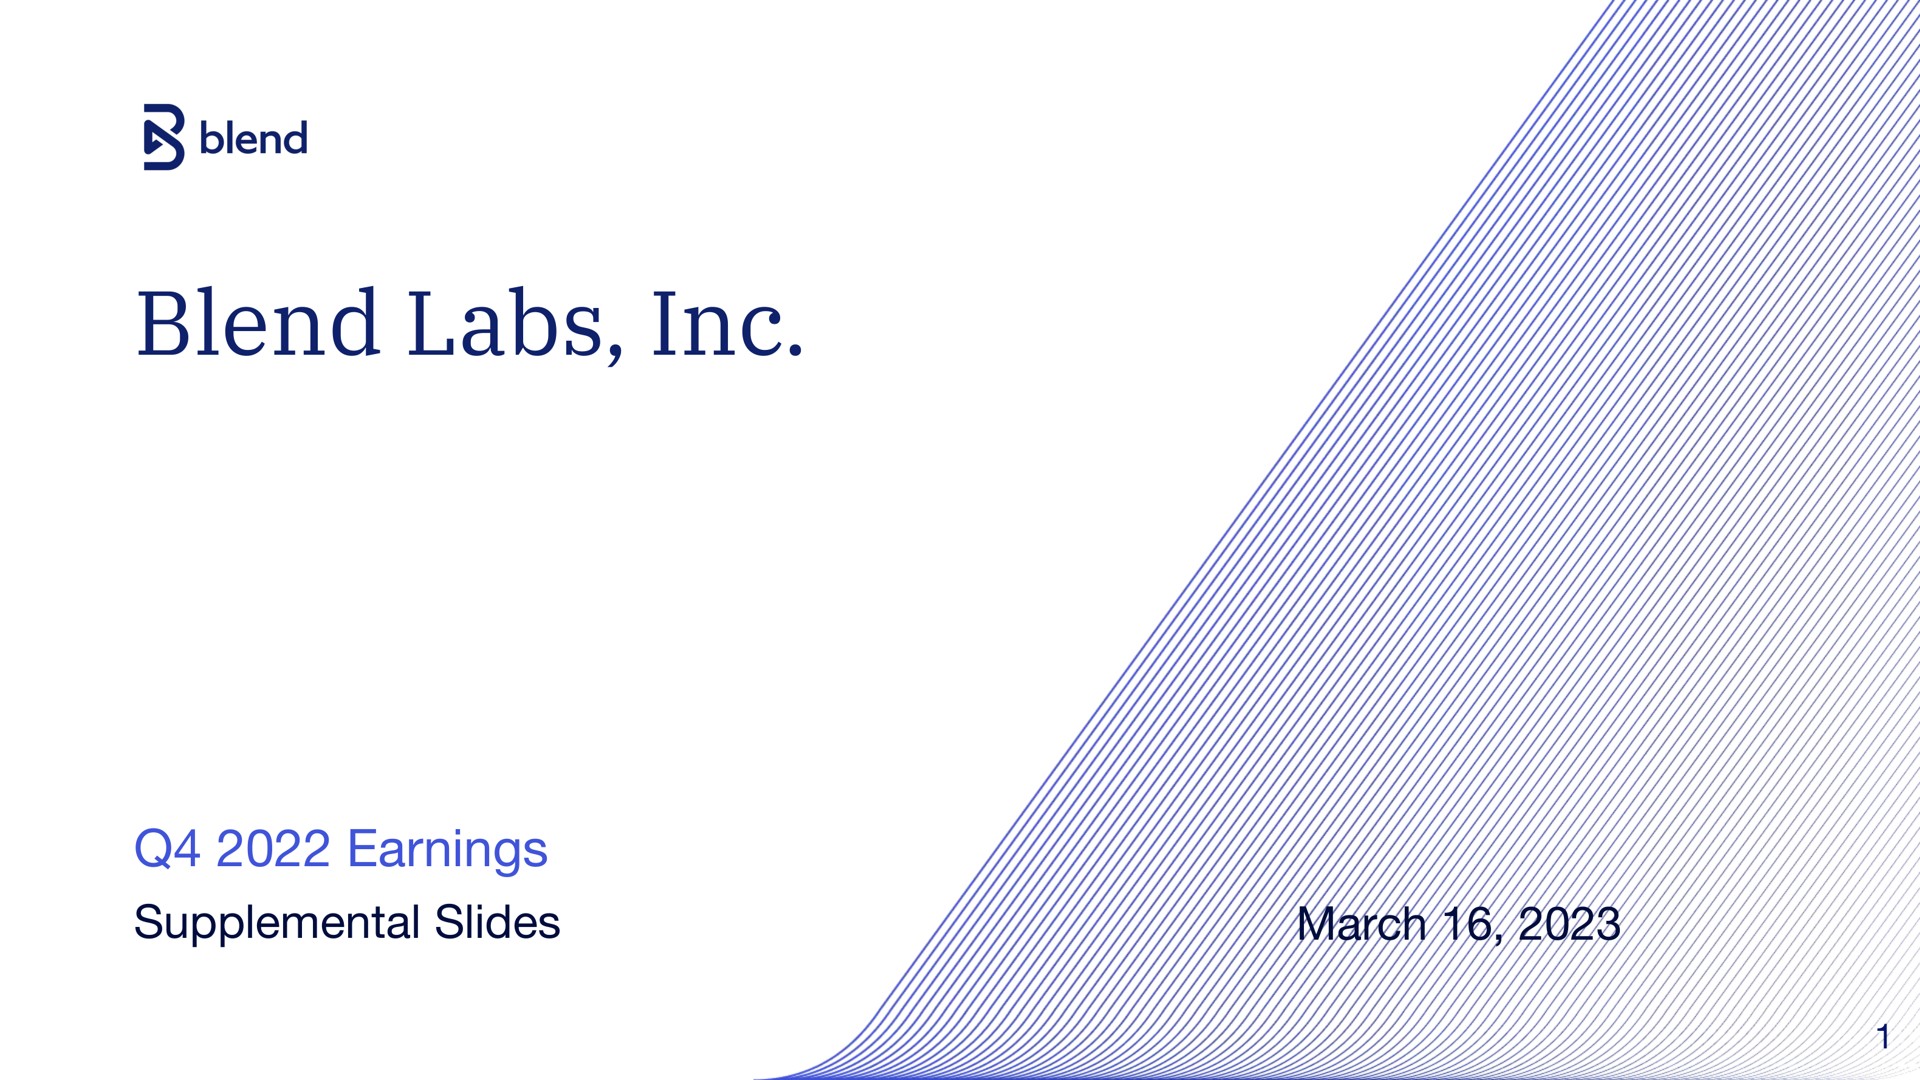 blend labs earnings supplemental slides march | Blend